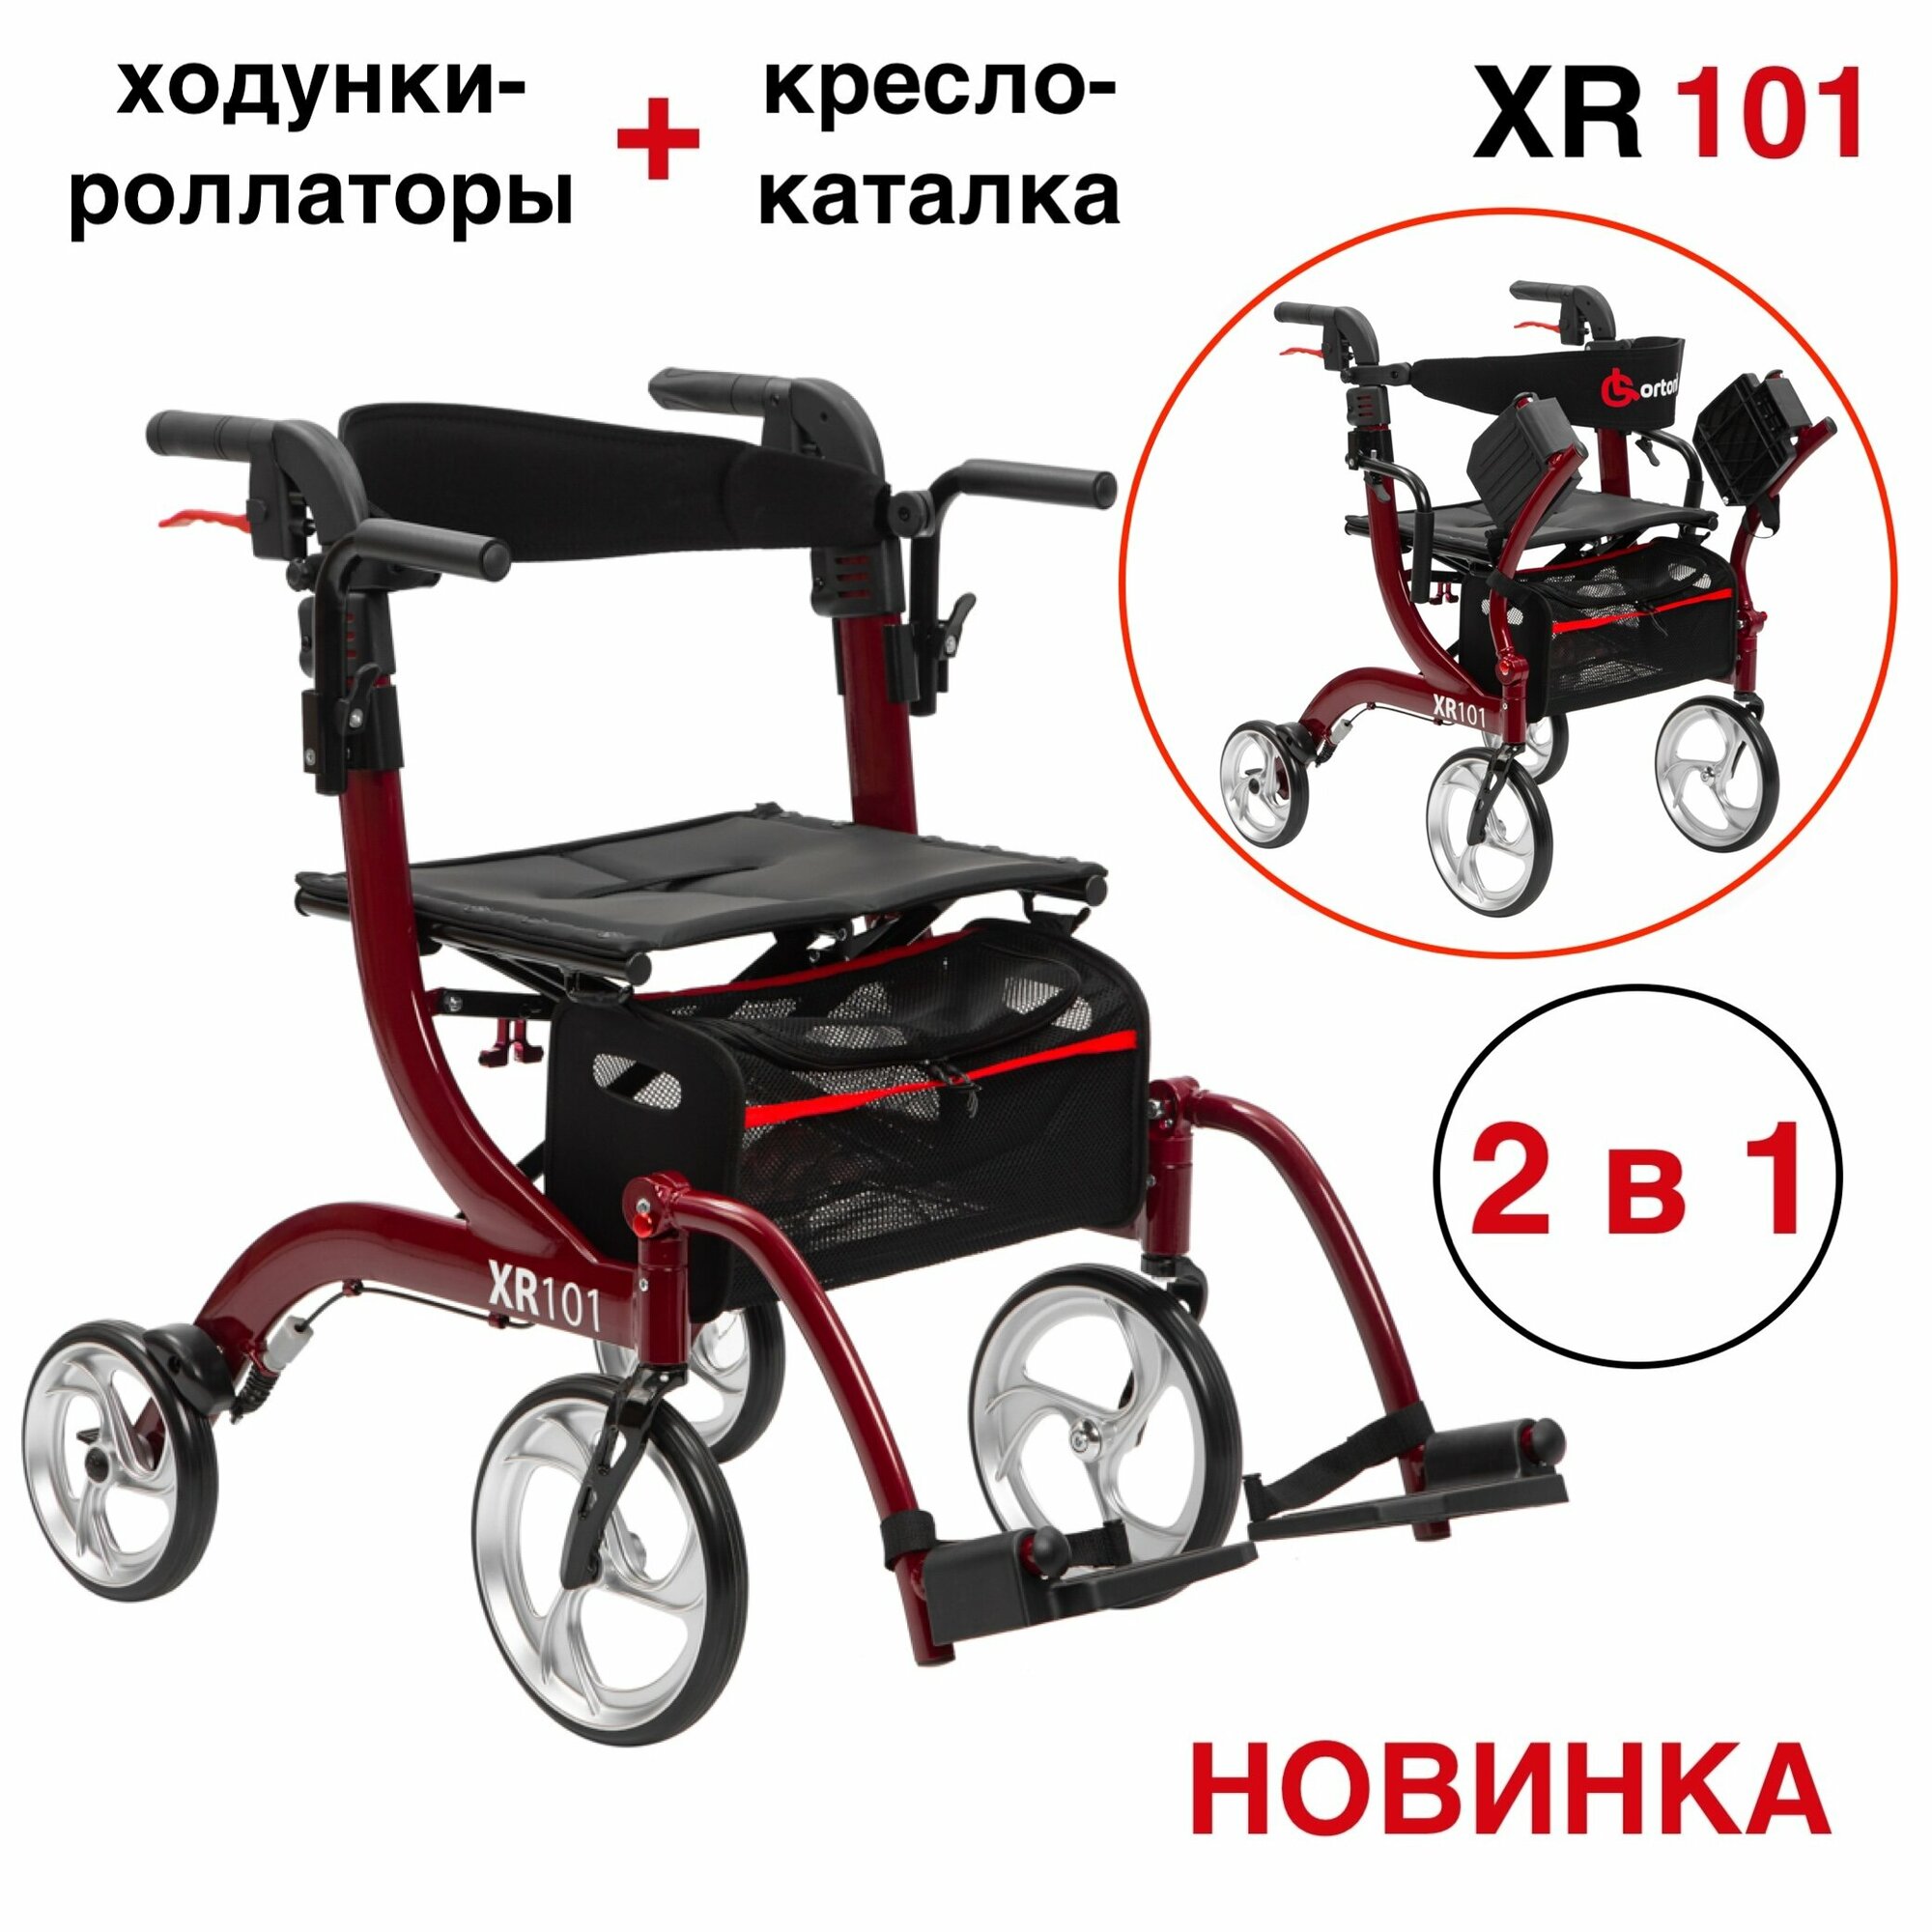 Ходунки-роллаторы-каталка Ortonica XR 101 для пожилых и инвалидов складные с сиденьем подлокотниками подножками 4 колеса легкие регулируемые по высоте до 110 кг красная рама